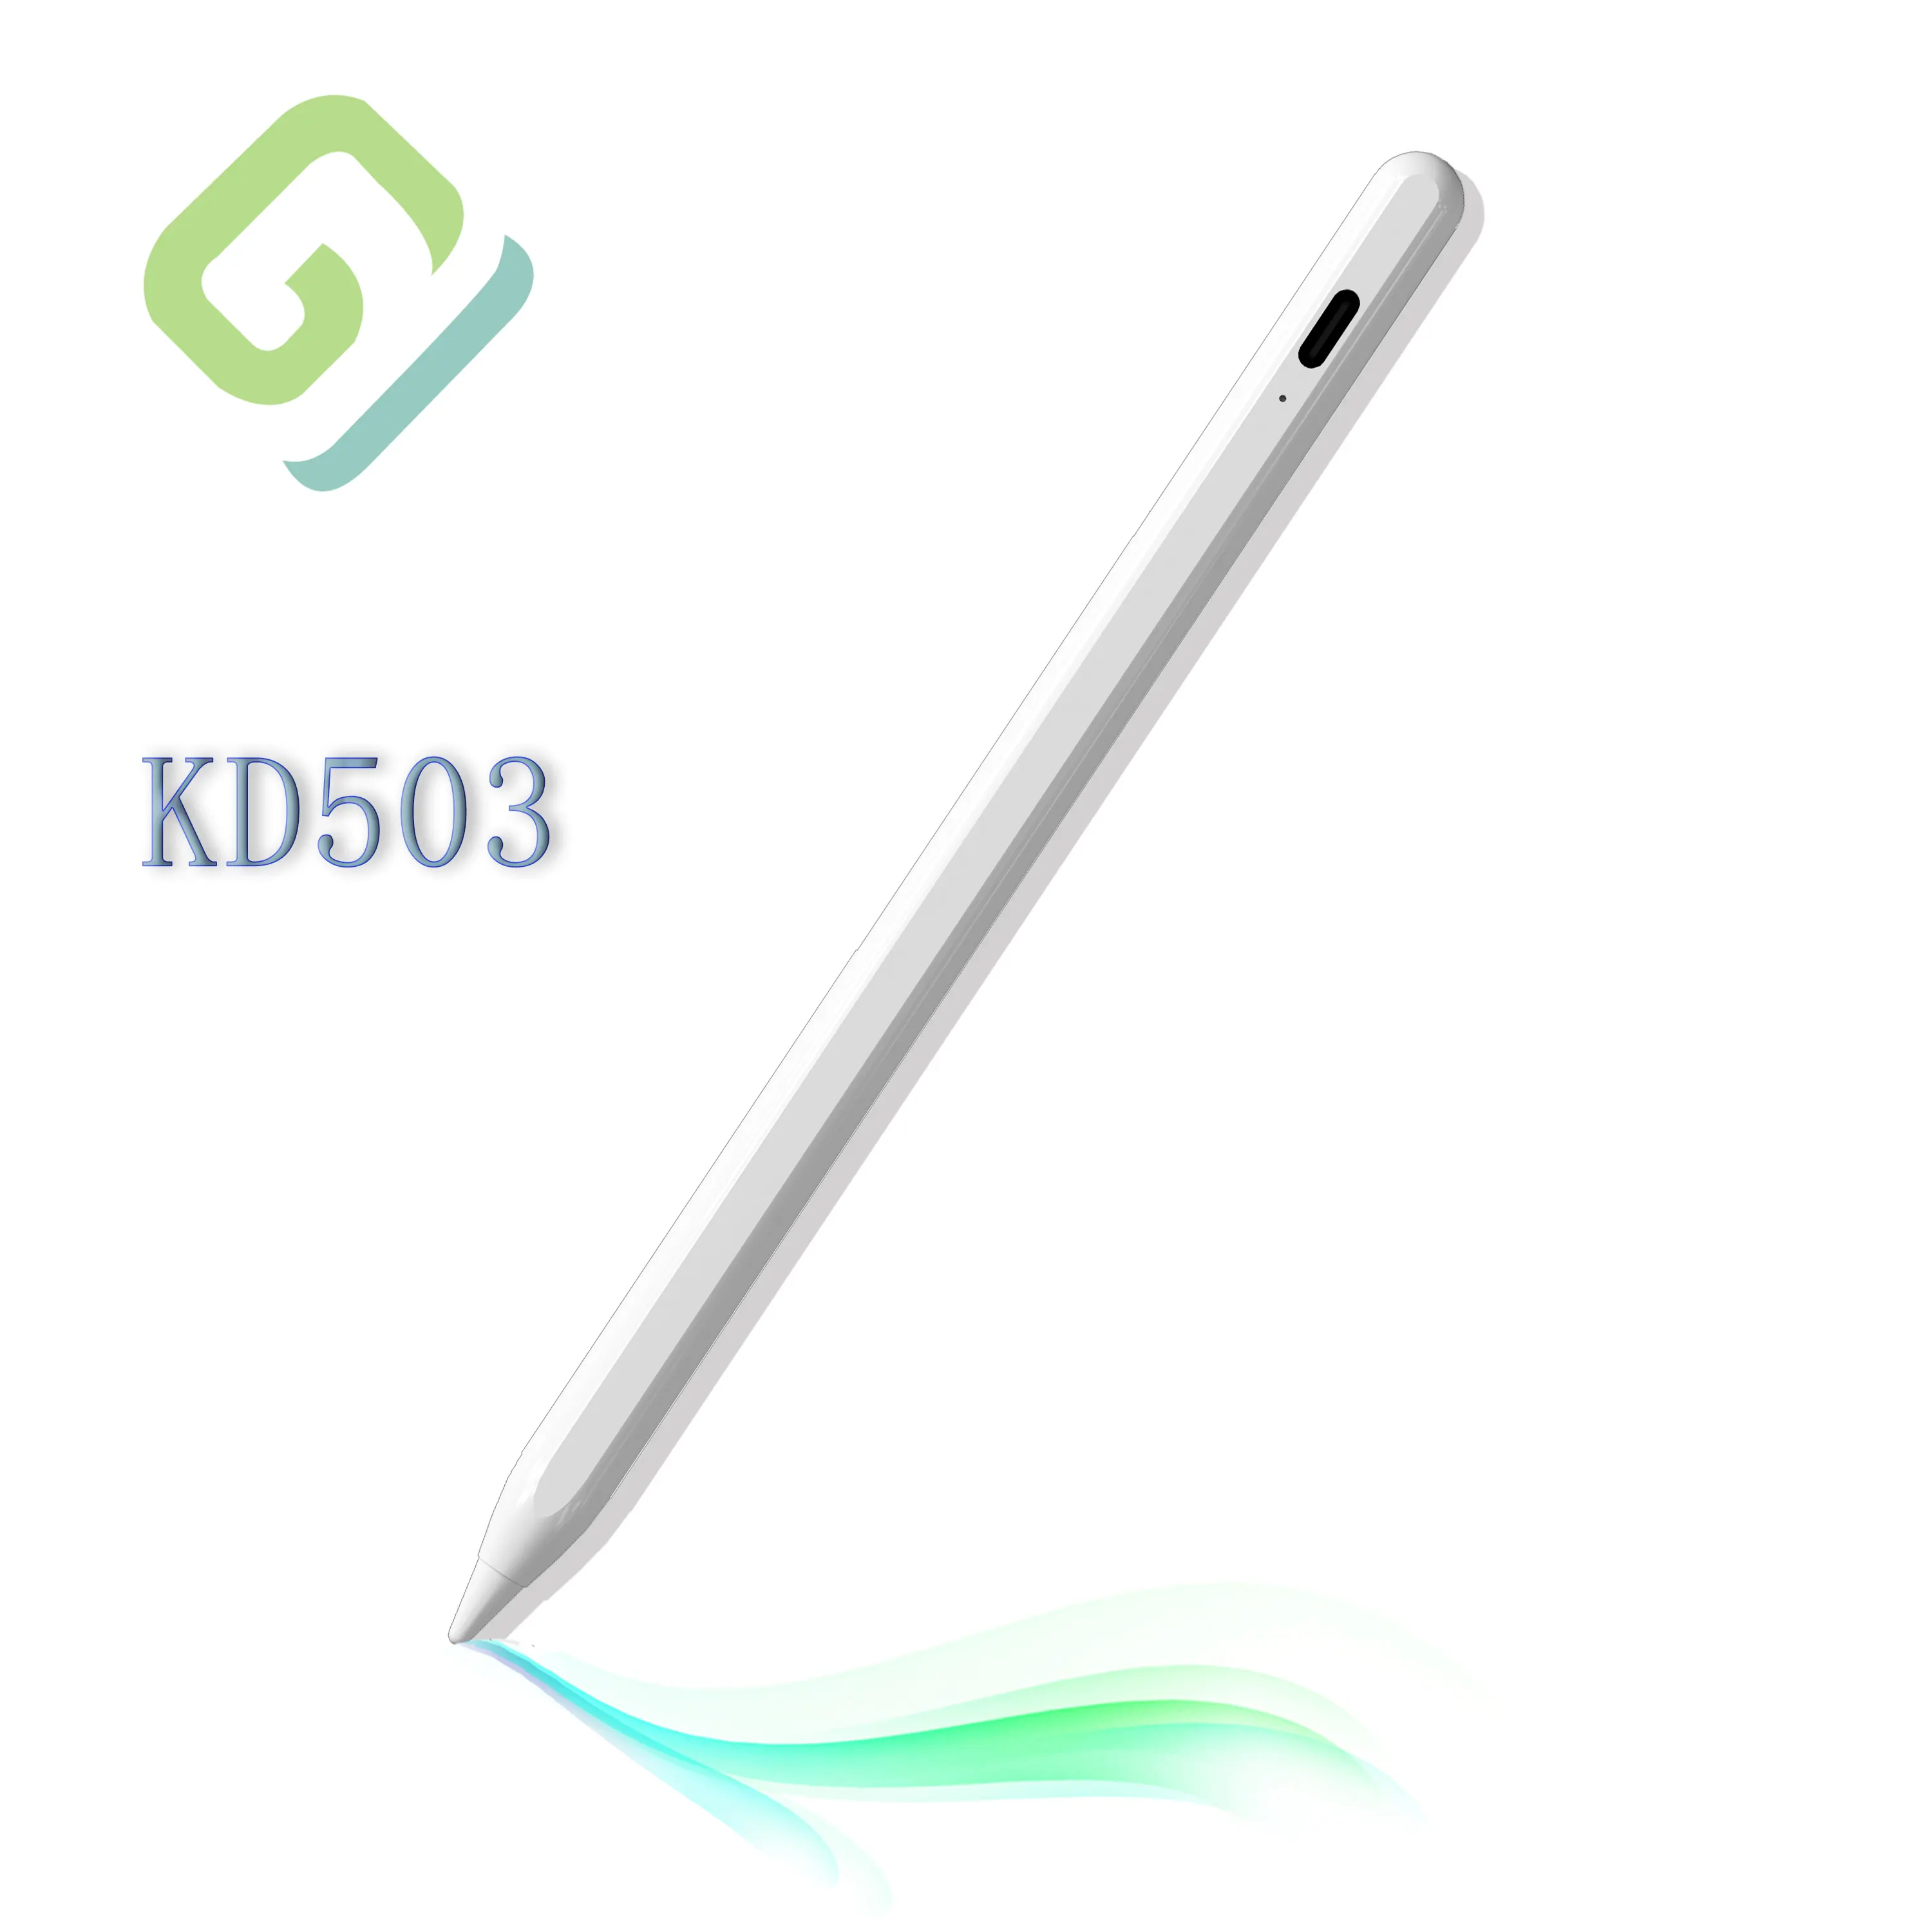 Benutzer definierte Universal Touch Pen Zeichnung Design Working Stylus Pen für Ipad Lenovo für Ipad Tablet Pencil Lenovo Precision Pen 3 KD503